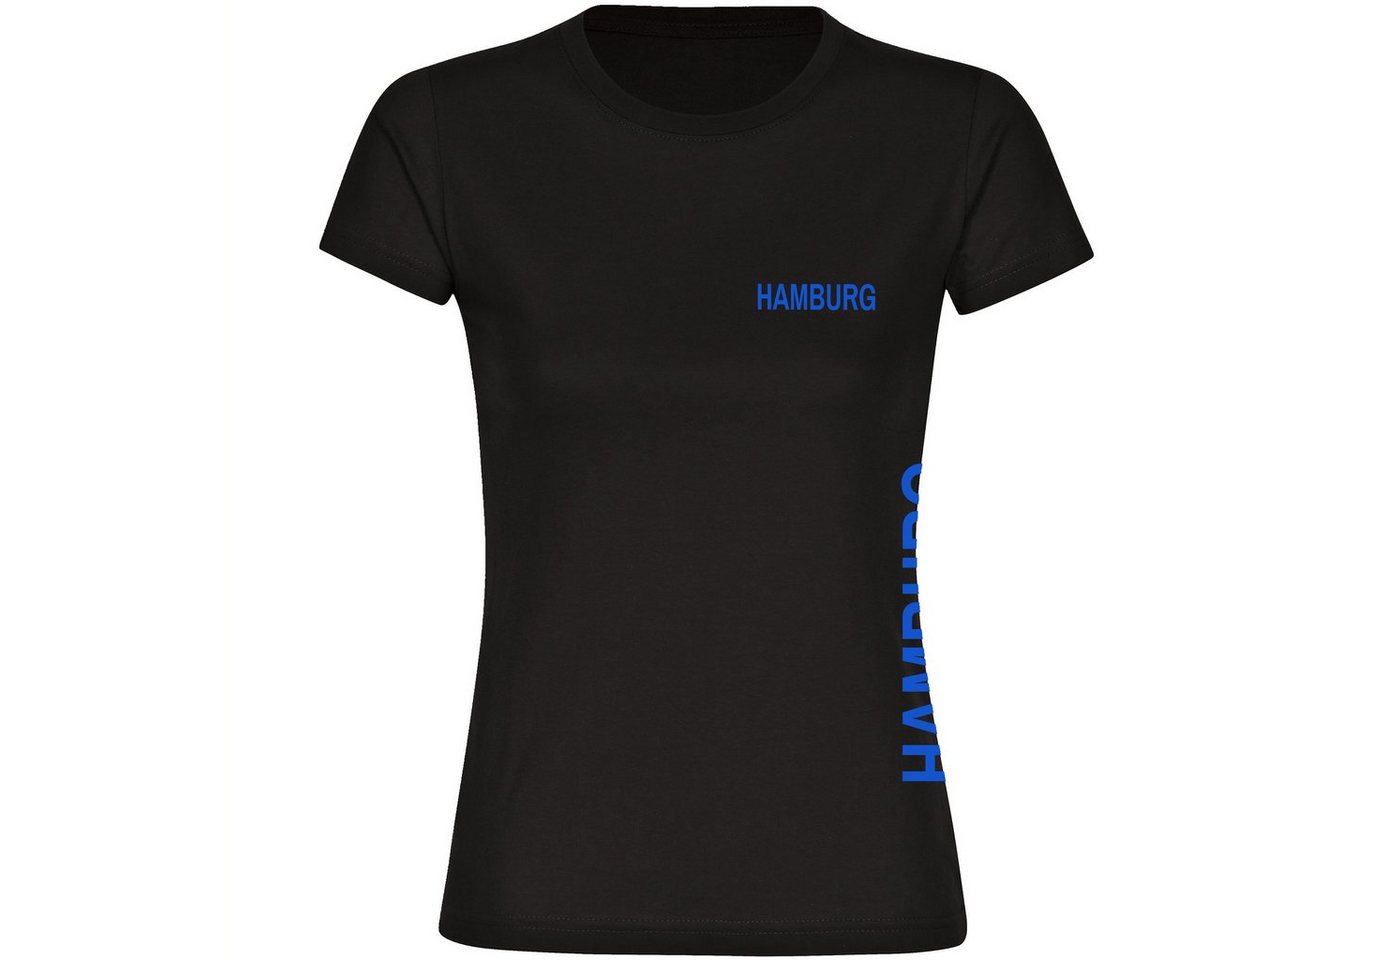 multifanshop T-Shirt Damen Hamburg - Brust & Seite - Frauen von multifanshop